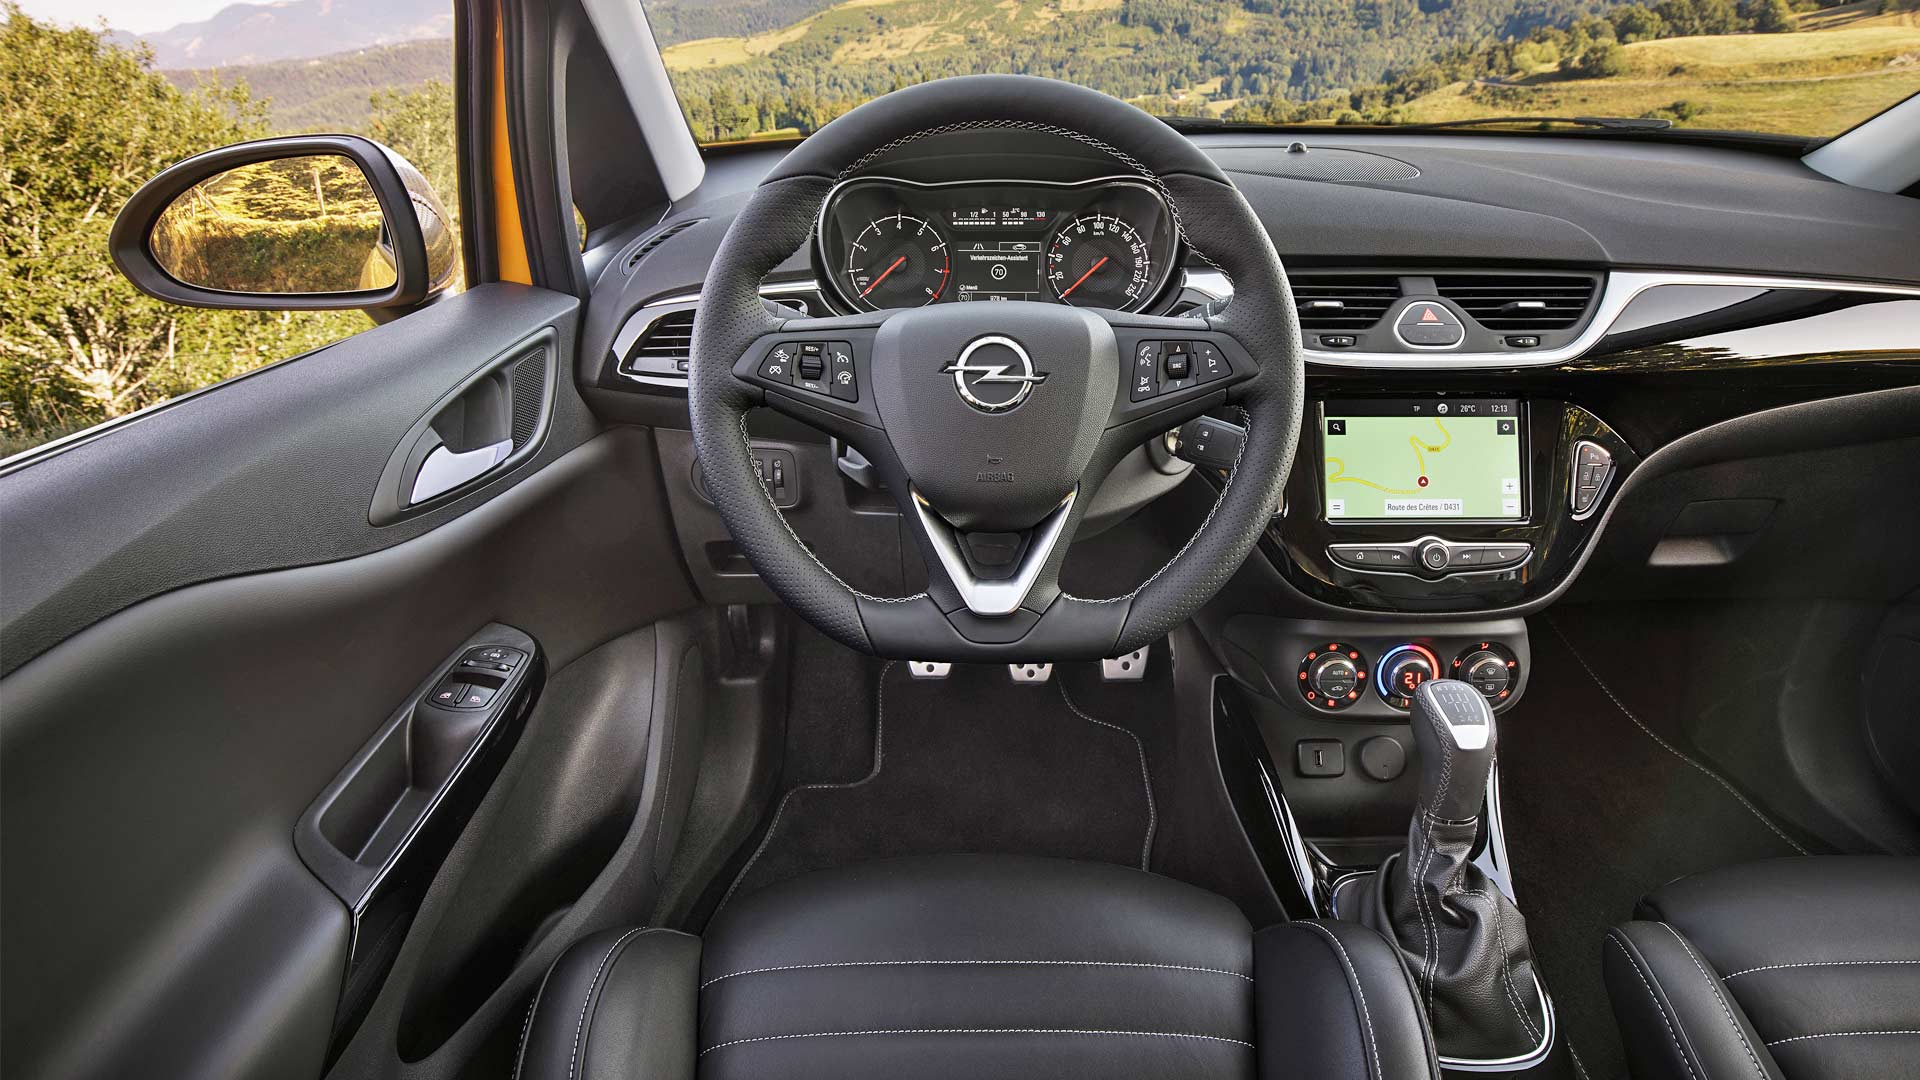 2018-Opel-Corsa-GSi-interior